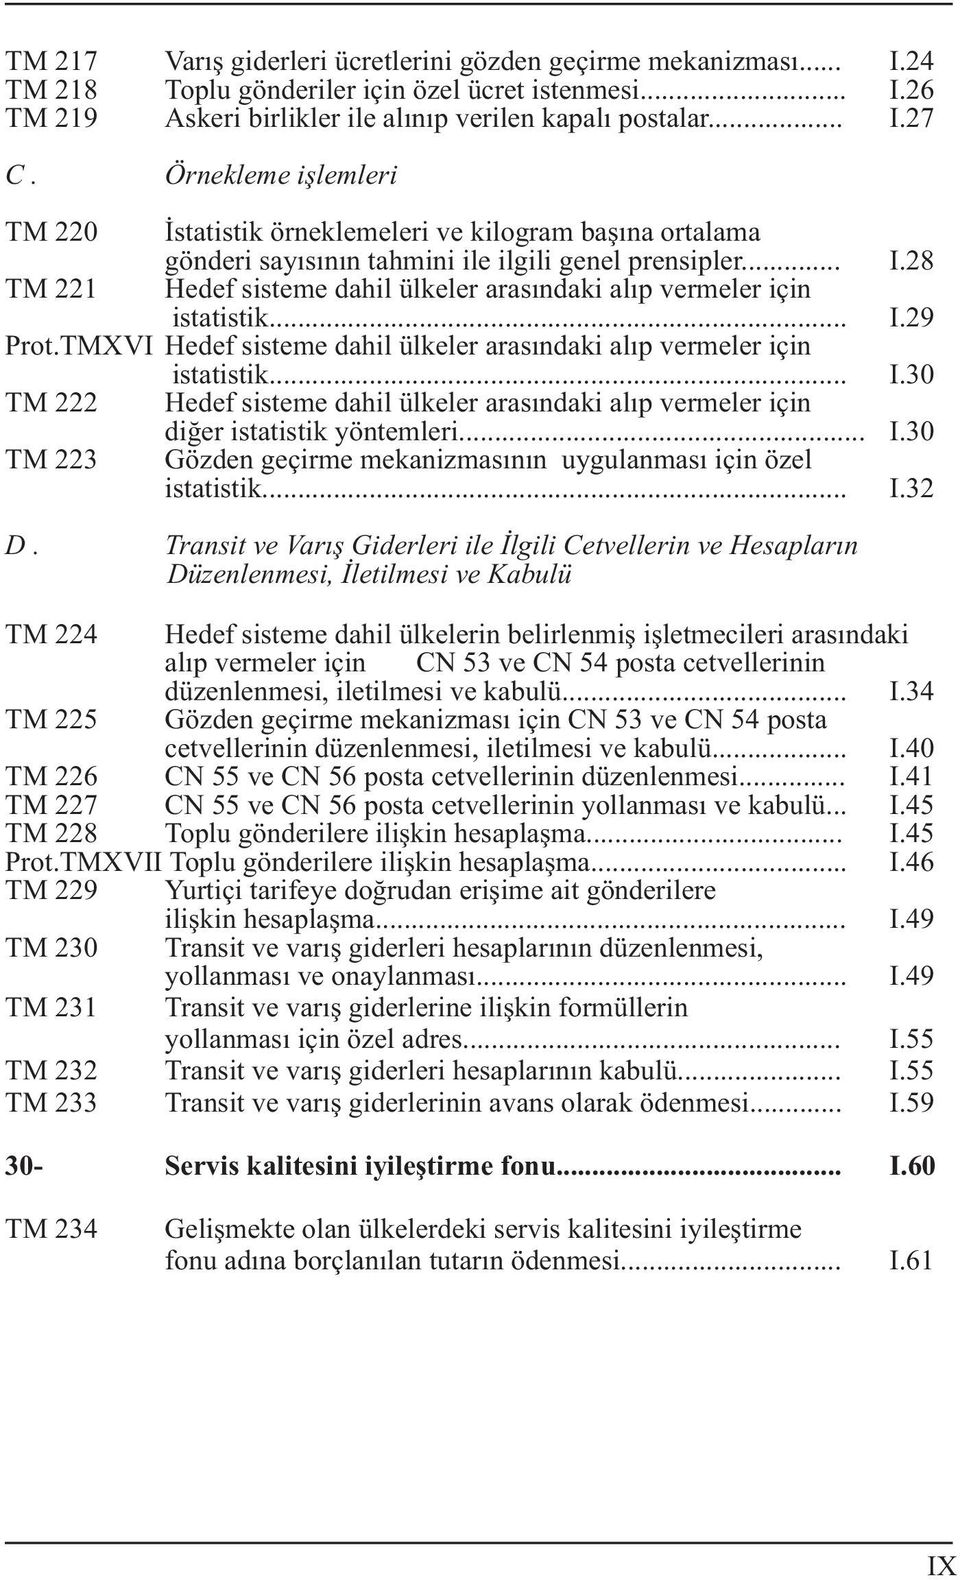 28 TM 221 Hedef sisteme dahil ülkeler arasýndaki alýp vermeler için istatistik... I.29 Prot.TMXVI Hedef sisteme dahil ülkeler arasýndaki alýp vermeler için istatistik... I.30 TM 222 Hedef sisteme dahil ülkeler arasýndaki alýp vermeler için diðer istatistik yöntemleri.